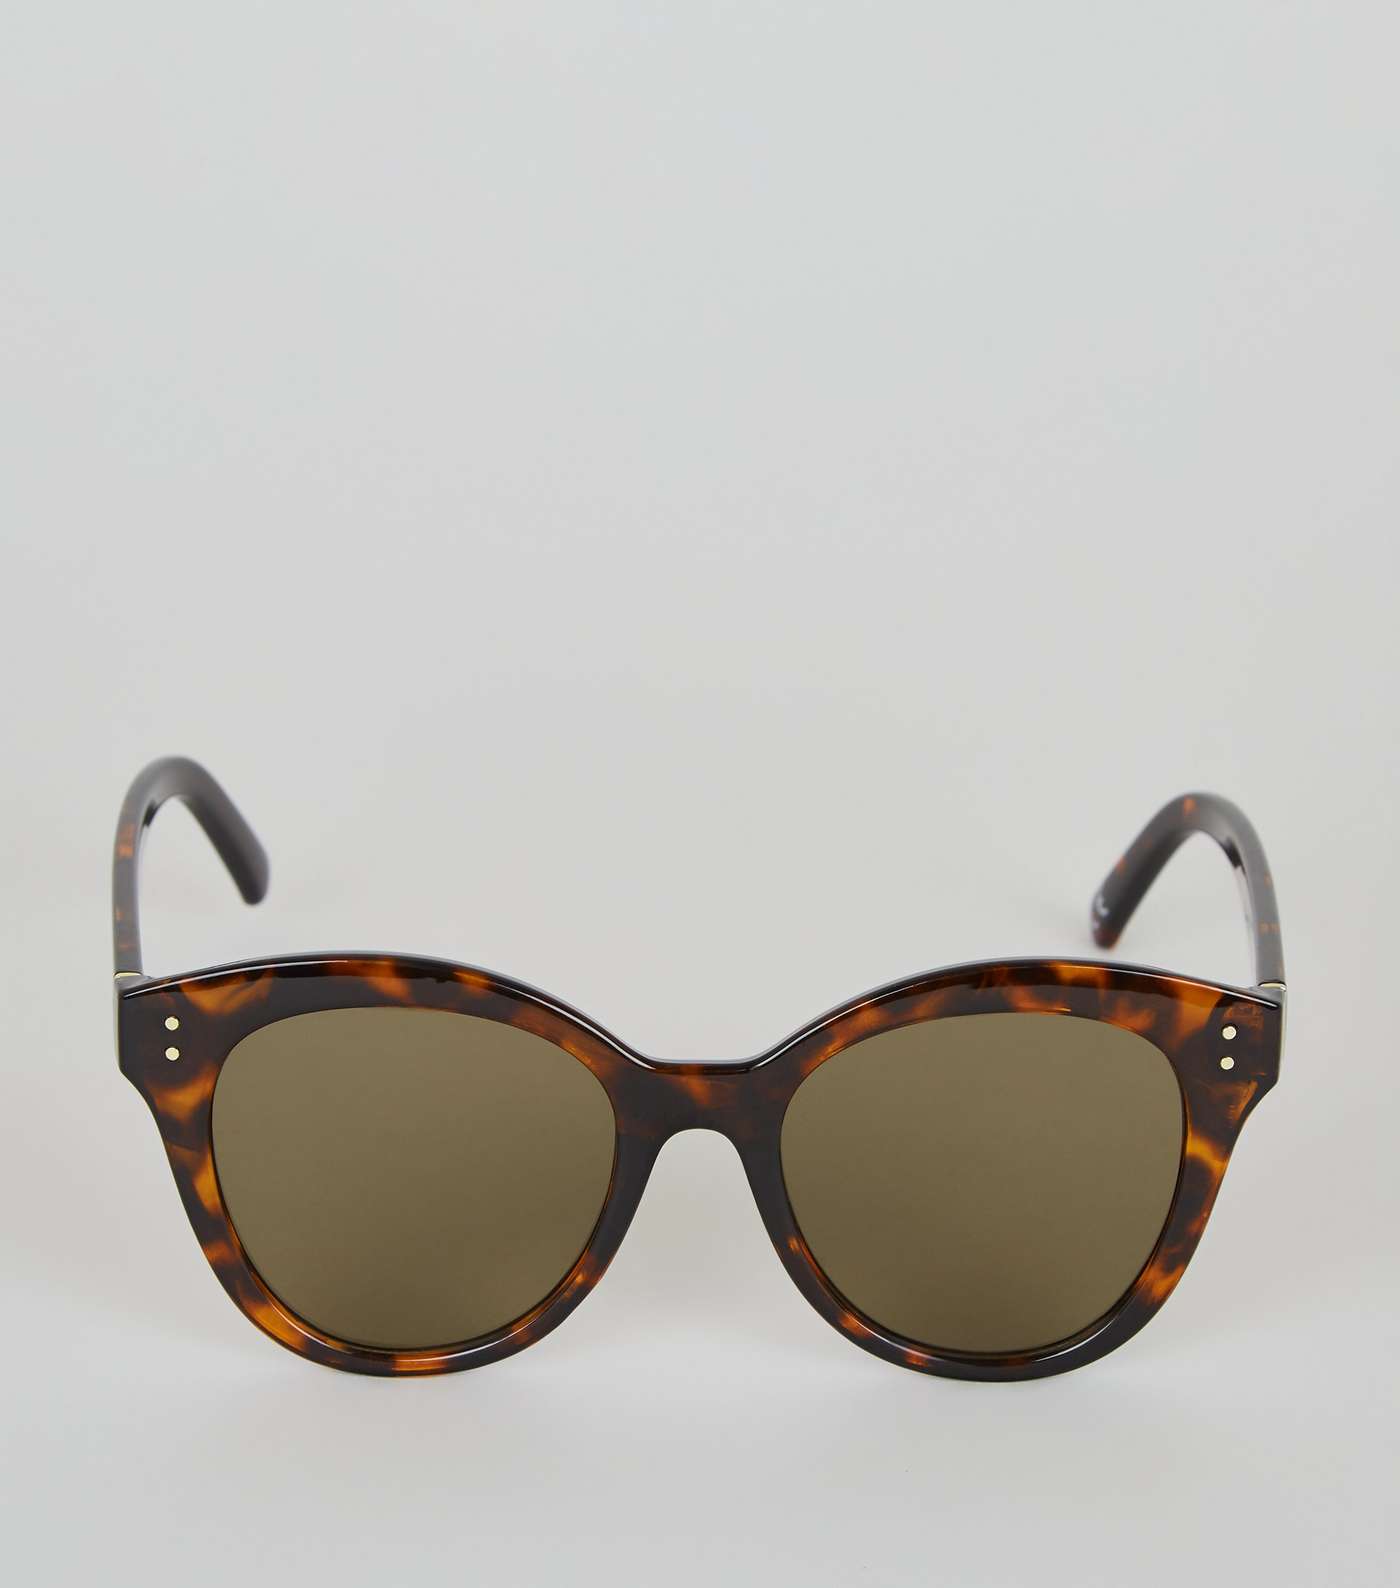 Dark Brown Tortoiseshell Effect Cat Eye Sunglasses Image 3